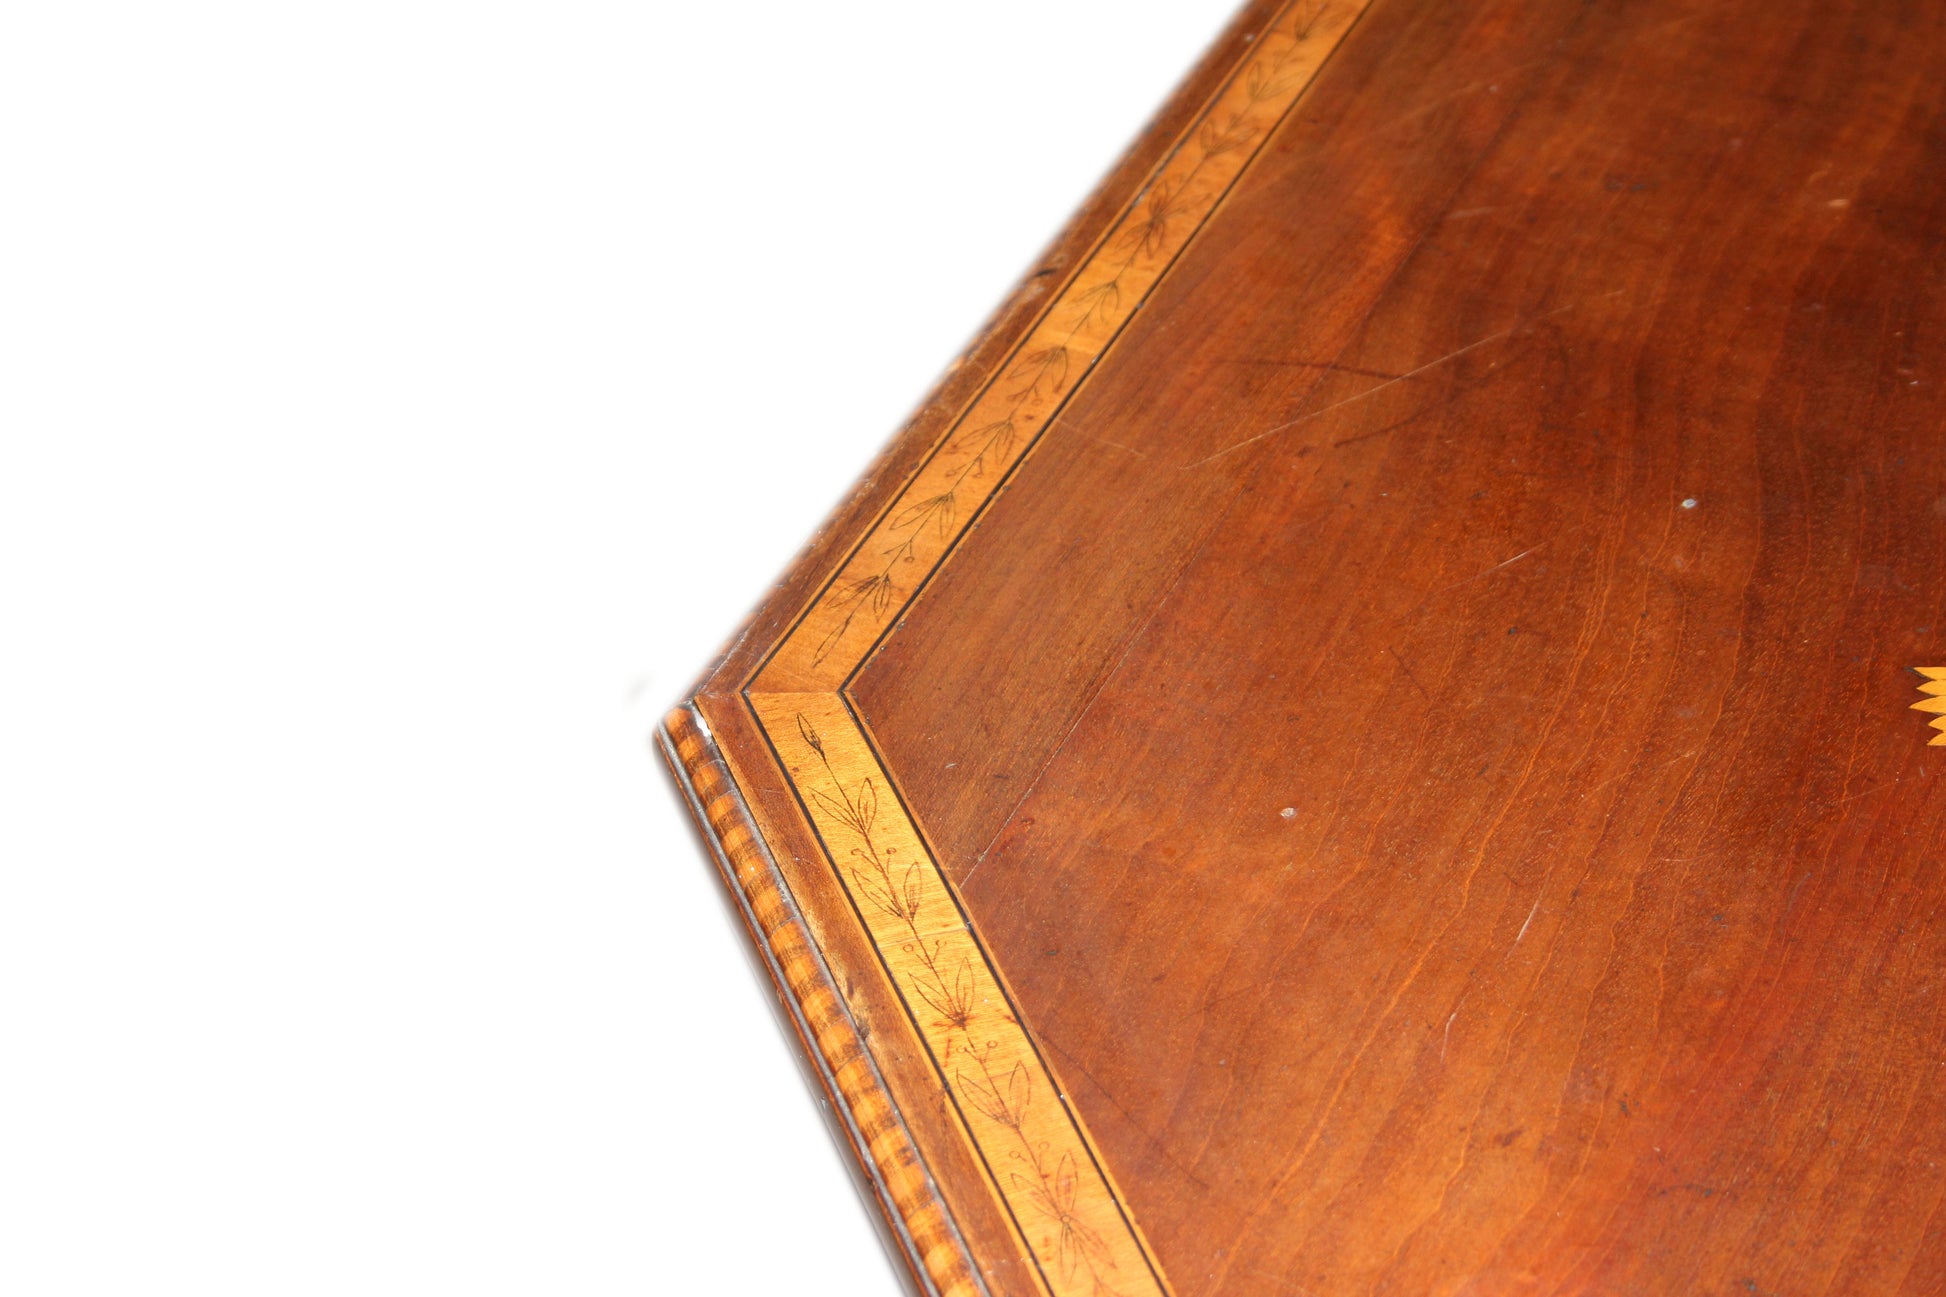 Tavolino Vittoriano ottagonale in legno di mogano con intarsi XIX secolo